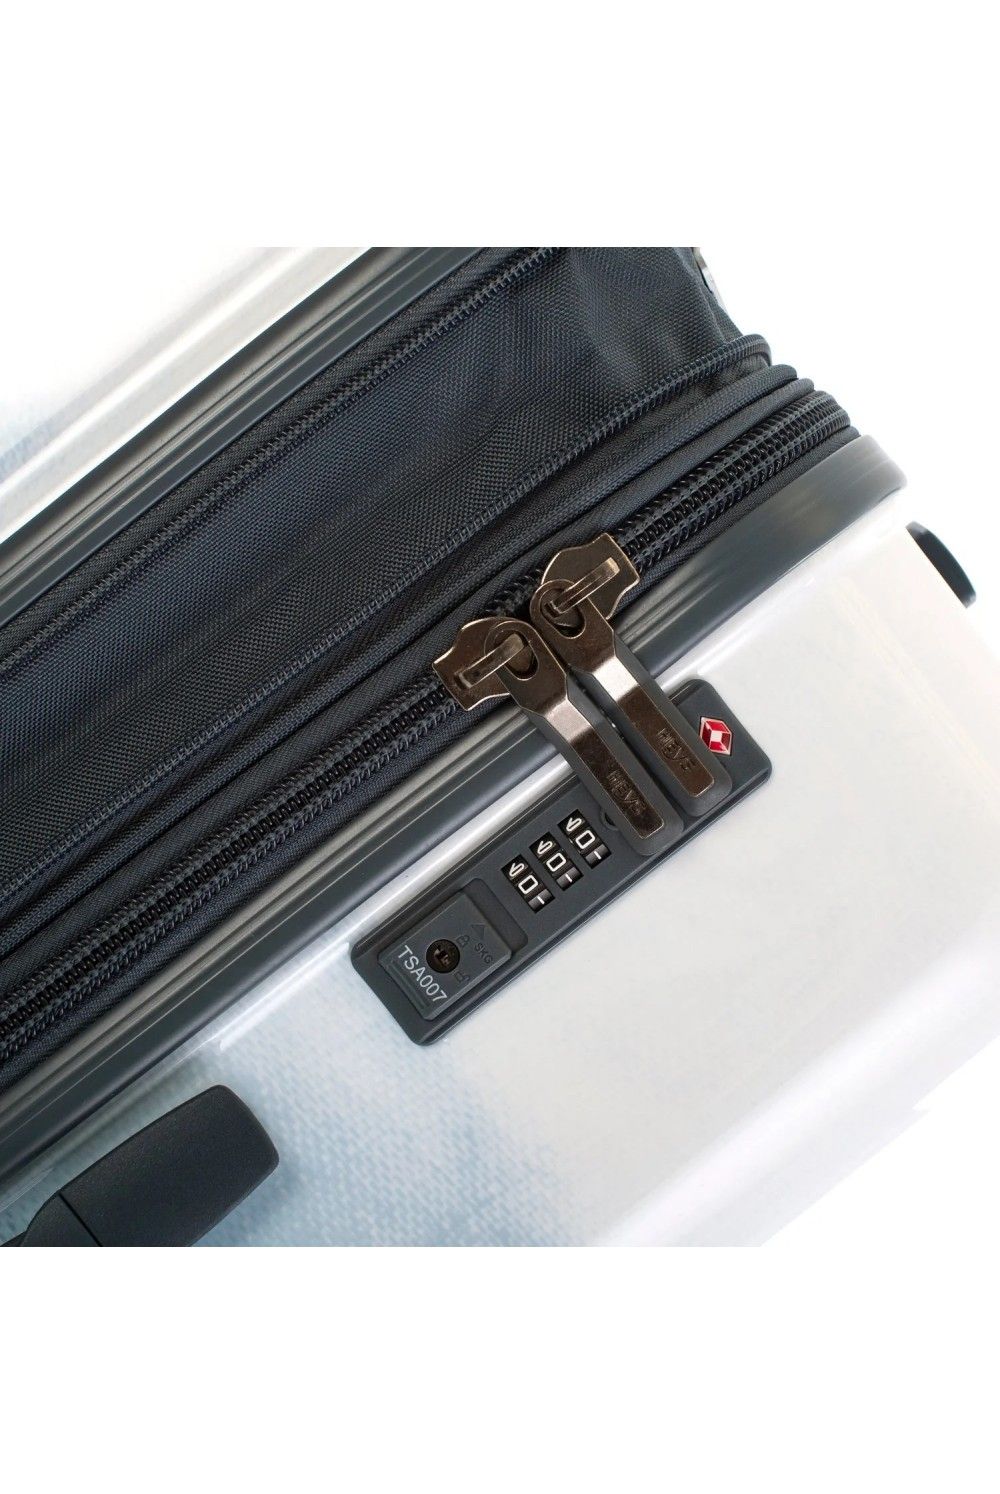 Suitcase hand luggage Heys Blue Fashion 4 wheel 55cm expandable